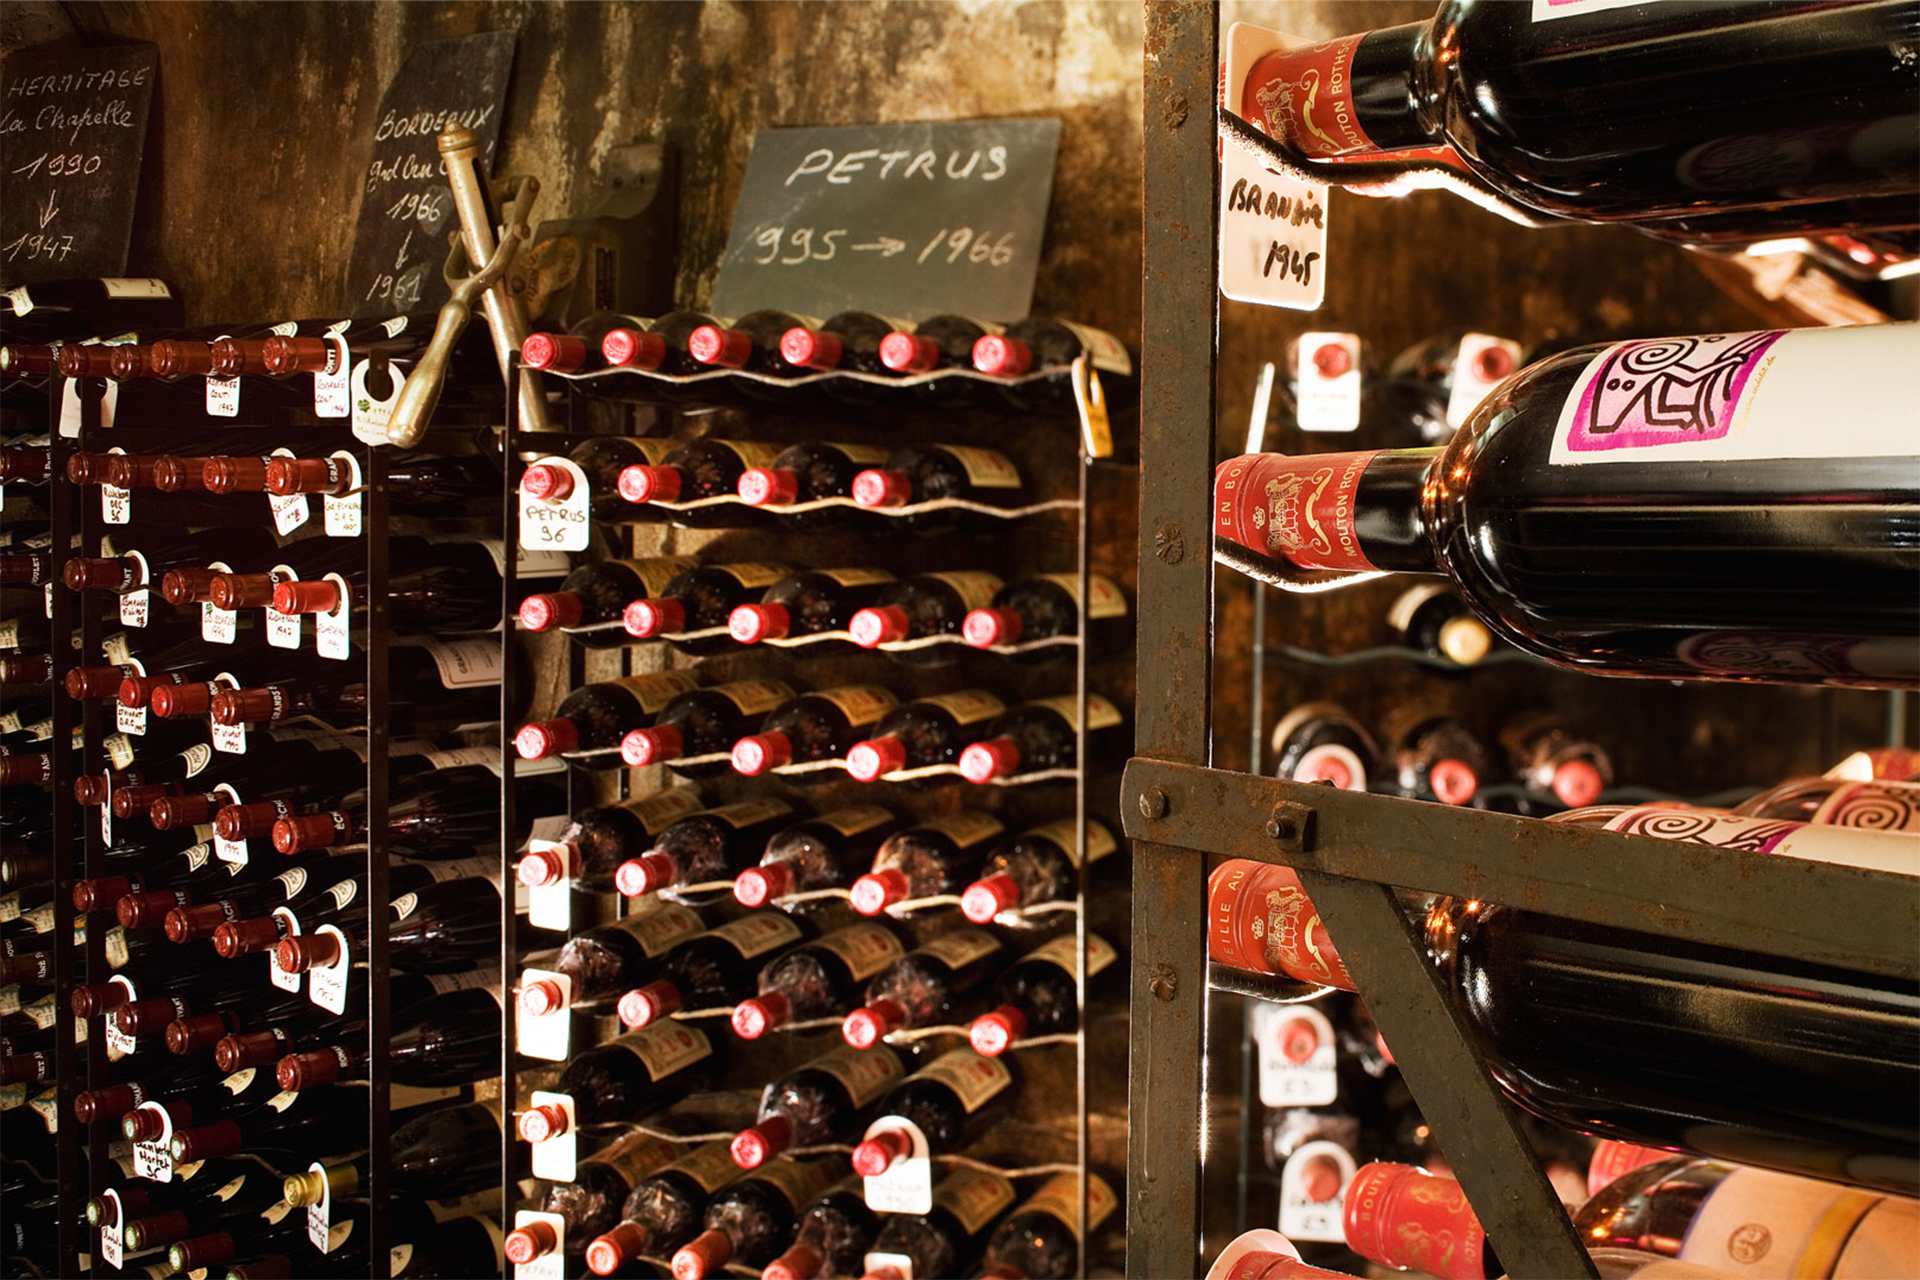 Փարիզի Maison Rostang ռեստորանից 600 հազար եվրոյի գինի են գողացել